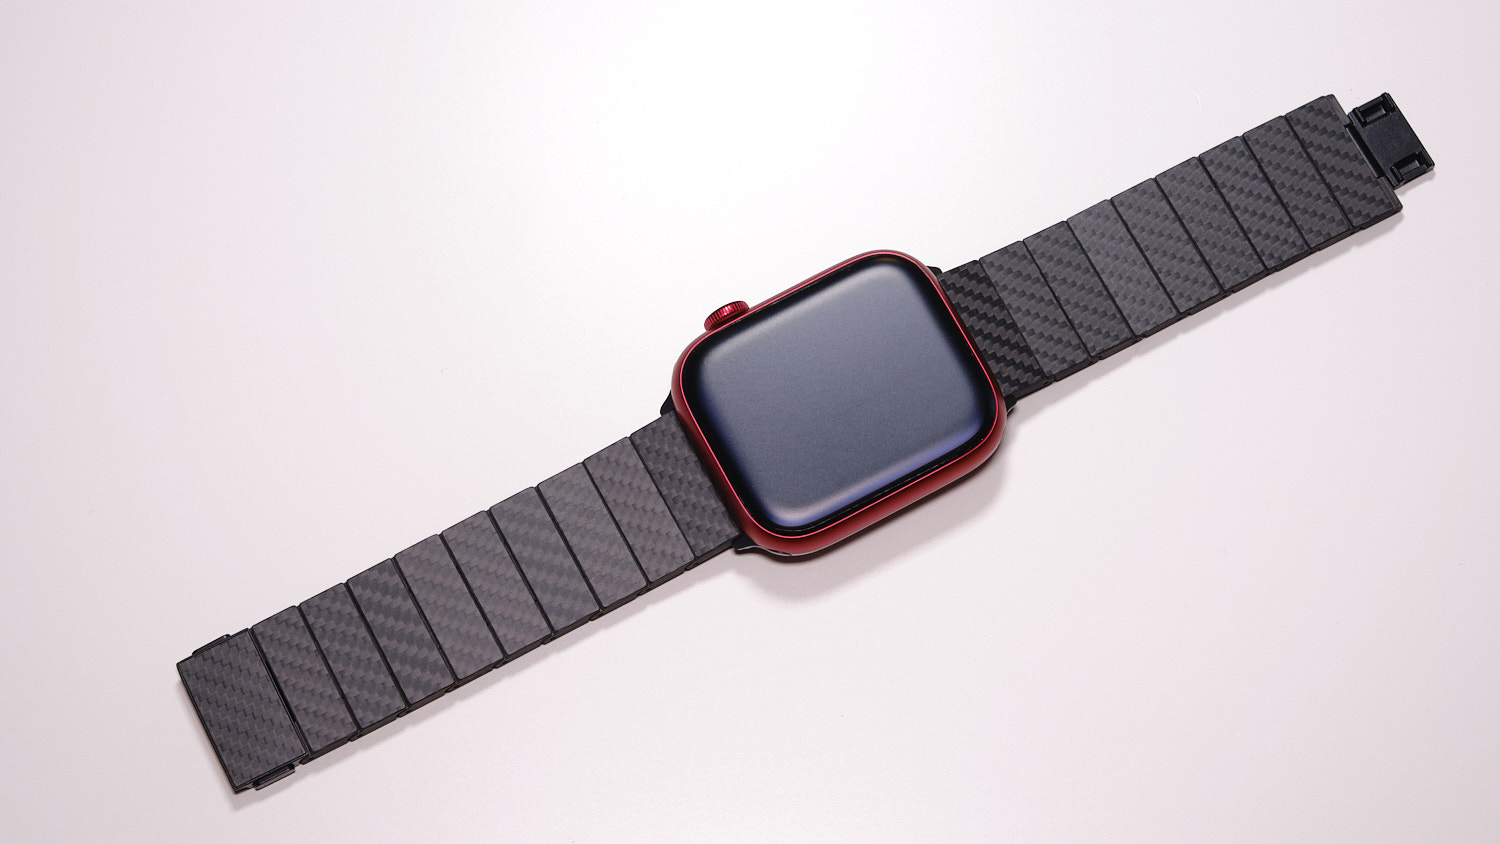 Pitaka Carbon Fiber Watch Band – Beste Alternative zu einem Metallarmband